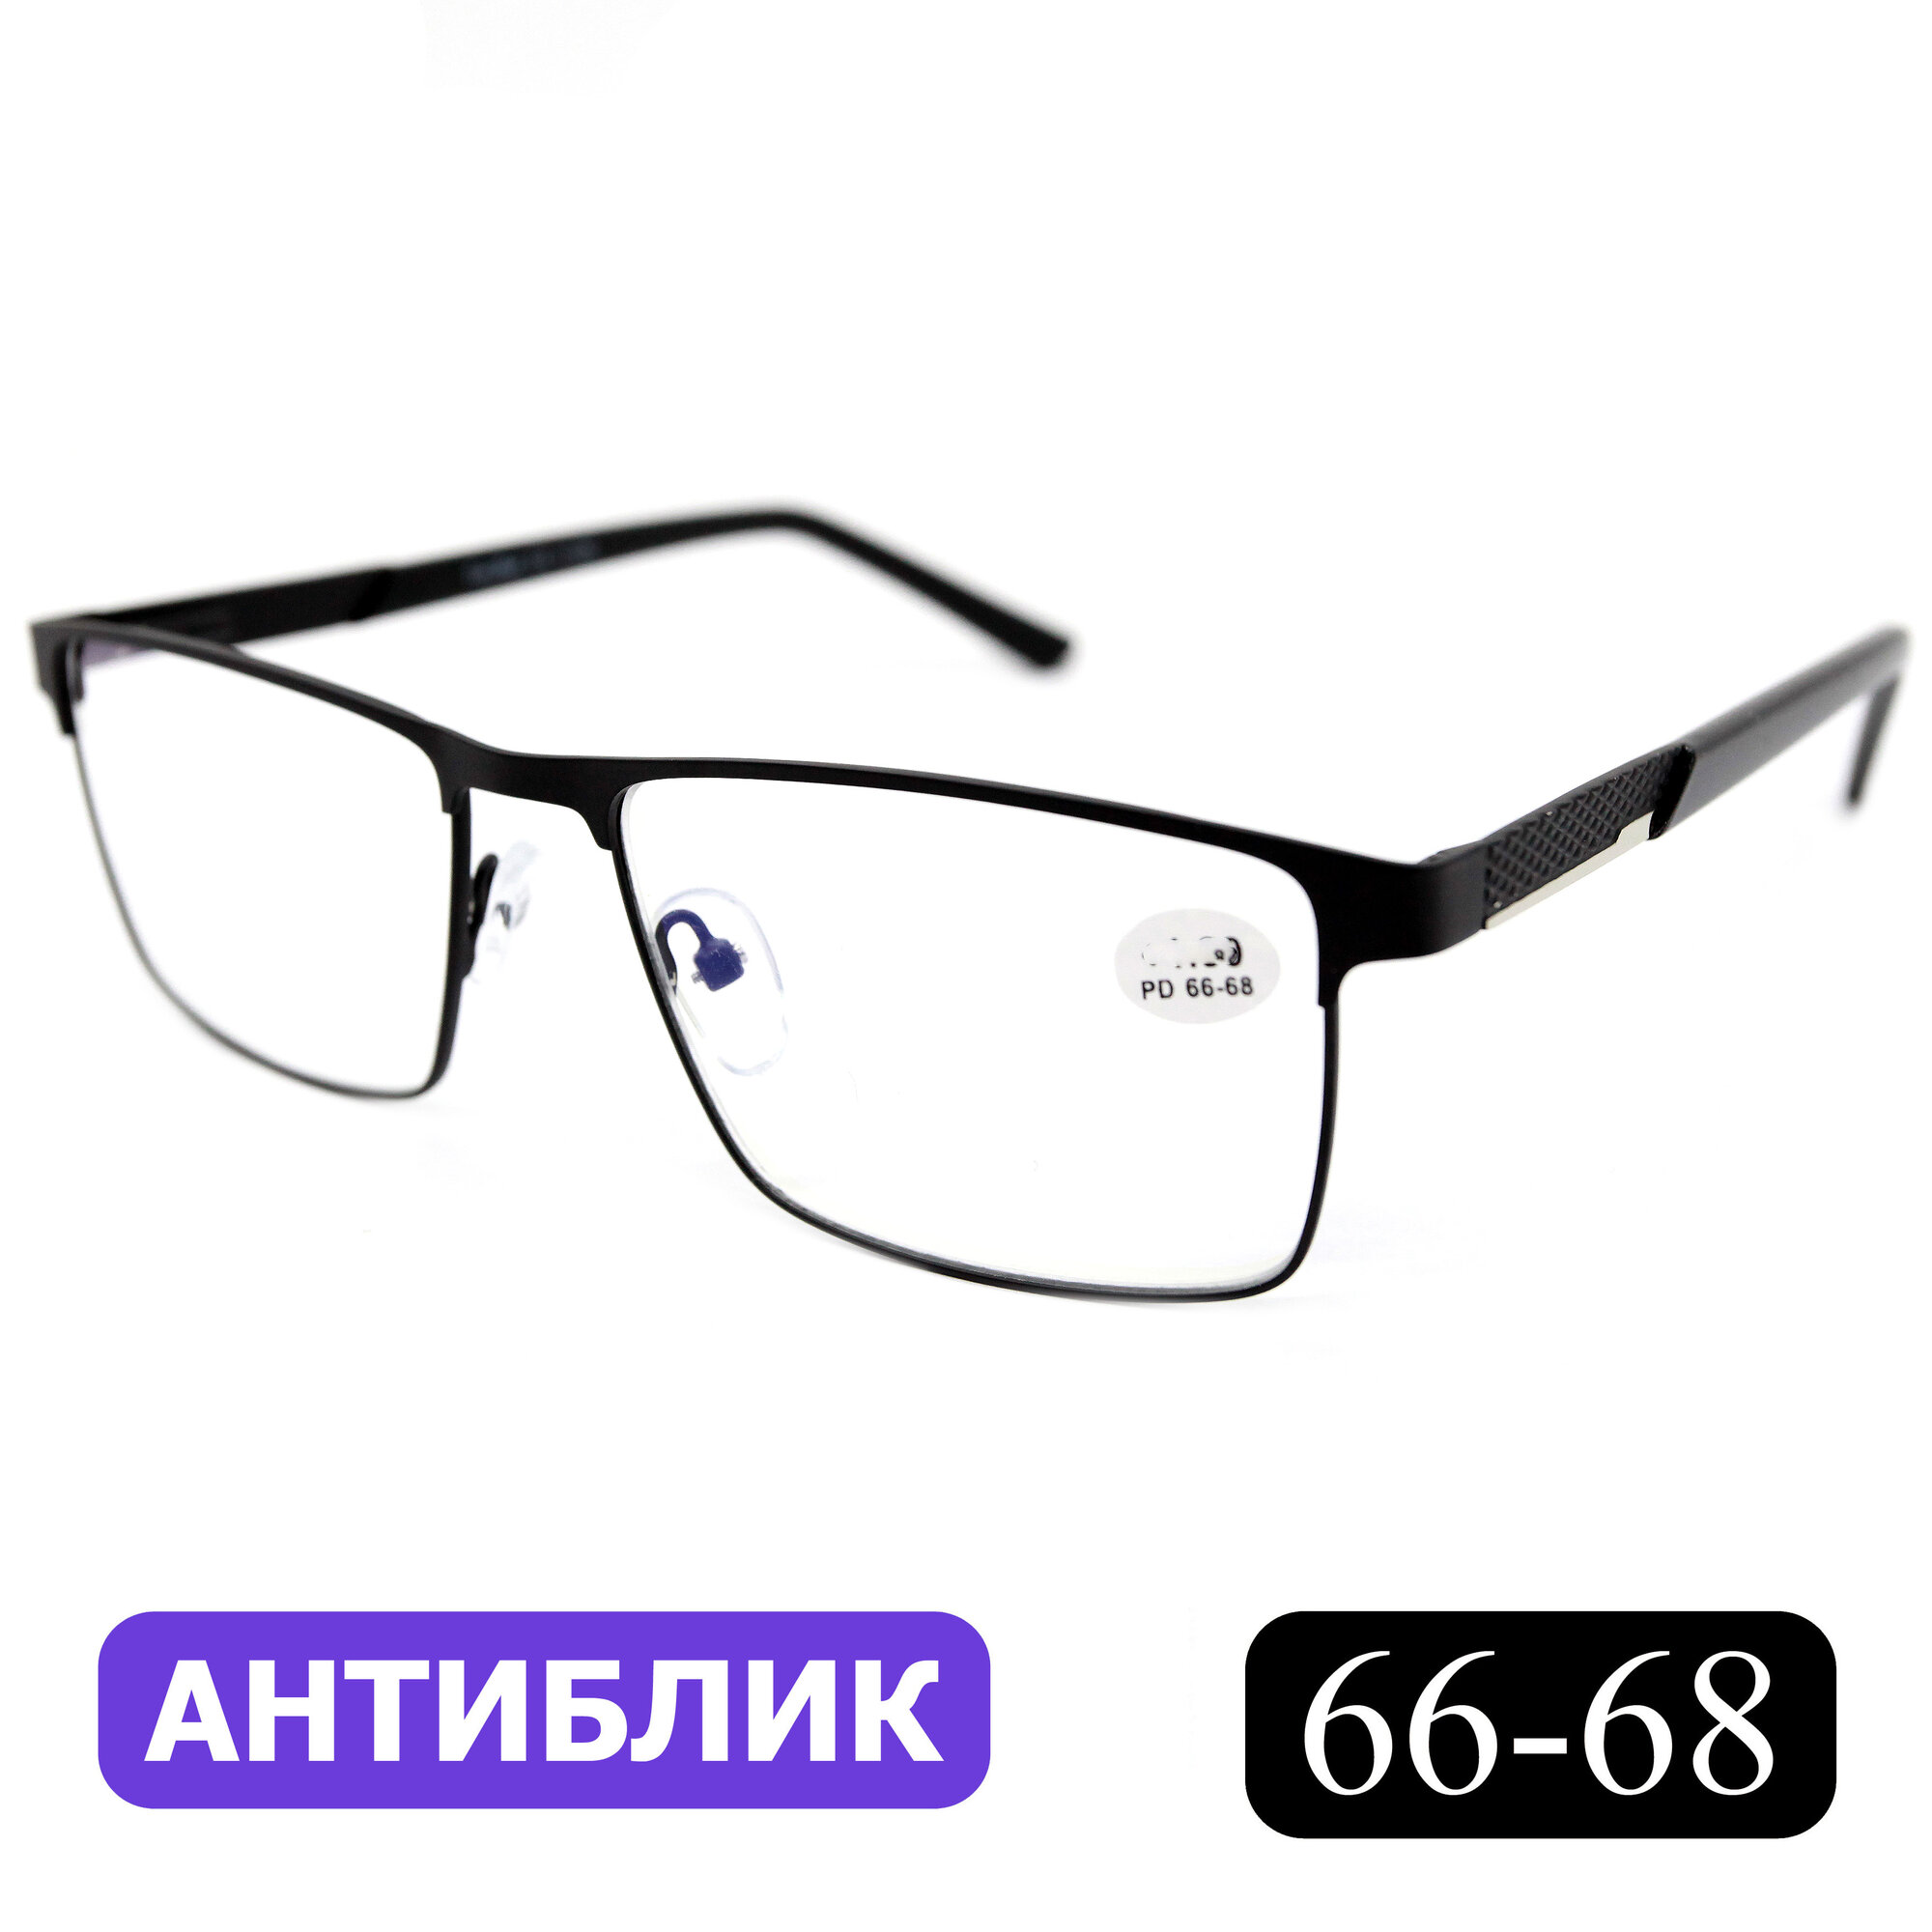 Готовые очки РЦ 66-68 для зрения-дали (-2.50) FABIA MONTI 8985 C6, без футляра, цвет черный, линзы антиблик, РЦ 66-68